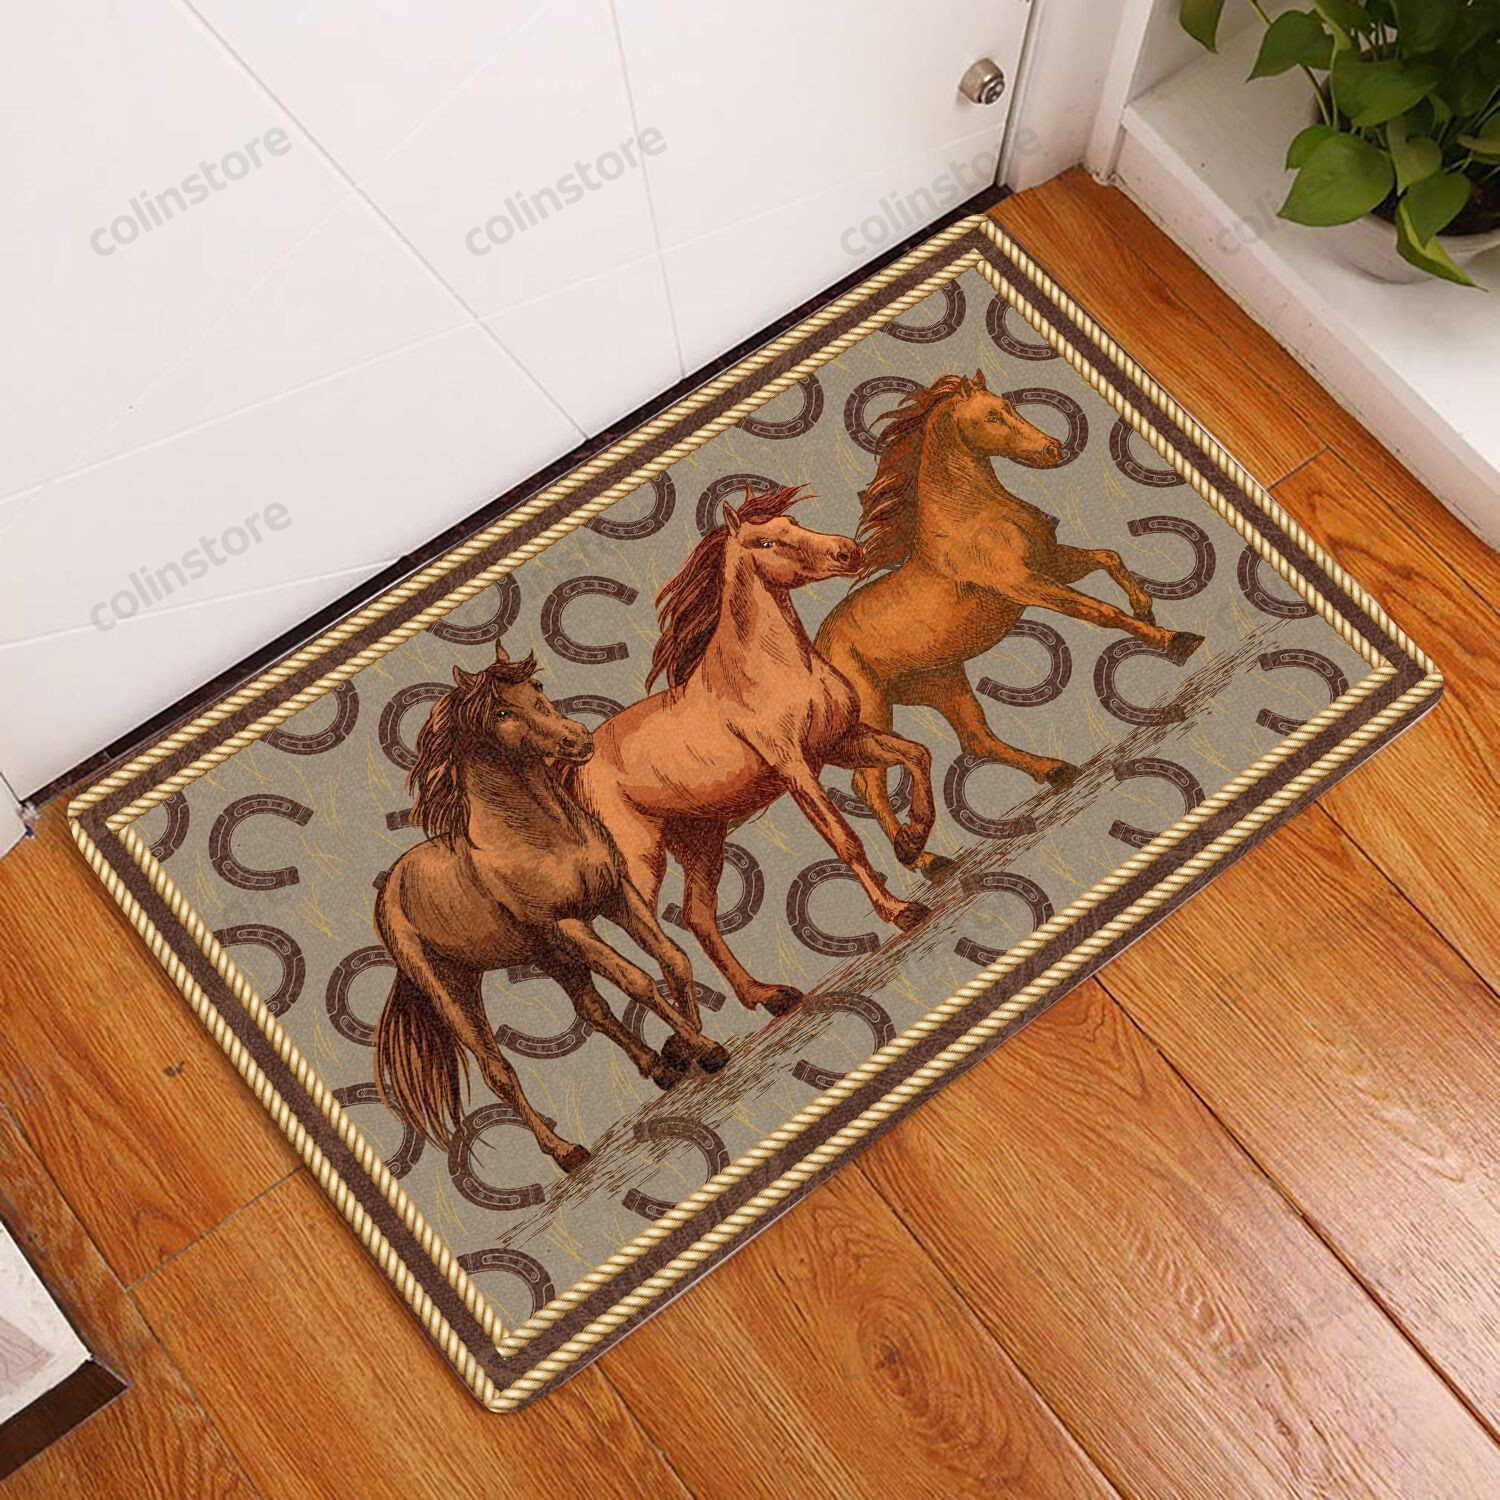 Amazing Horse Doormat Welcome Mat